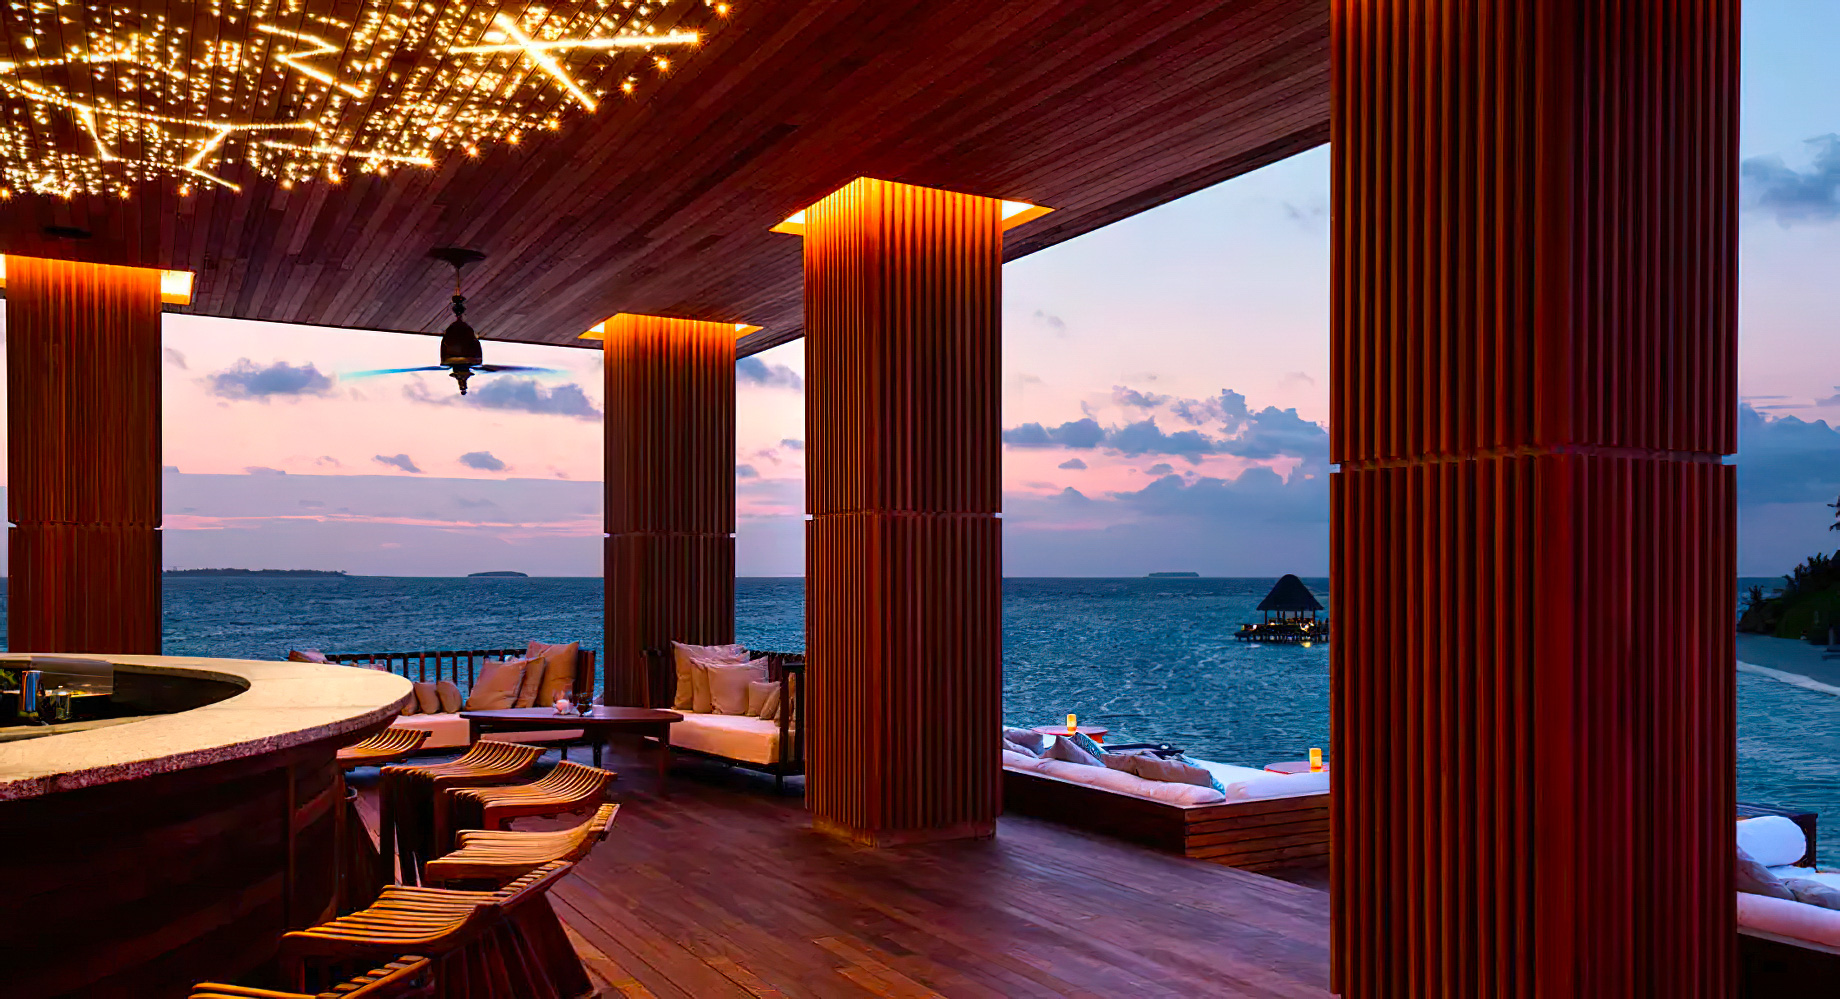 Anantara Kihavah Maldives Villas Resort – Baa Atoll, Maldives – SKY Bar interior Evening View